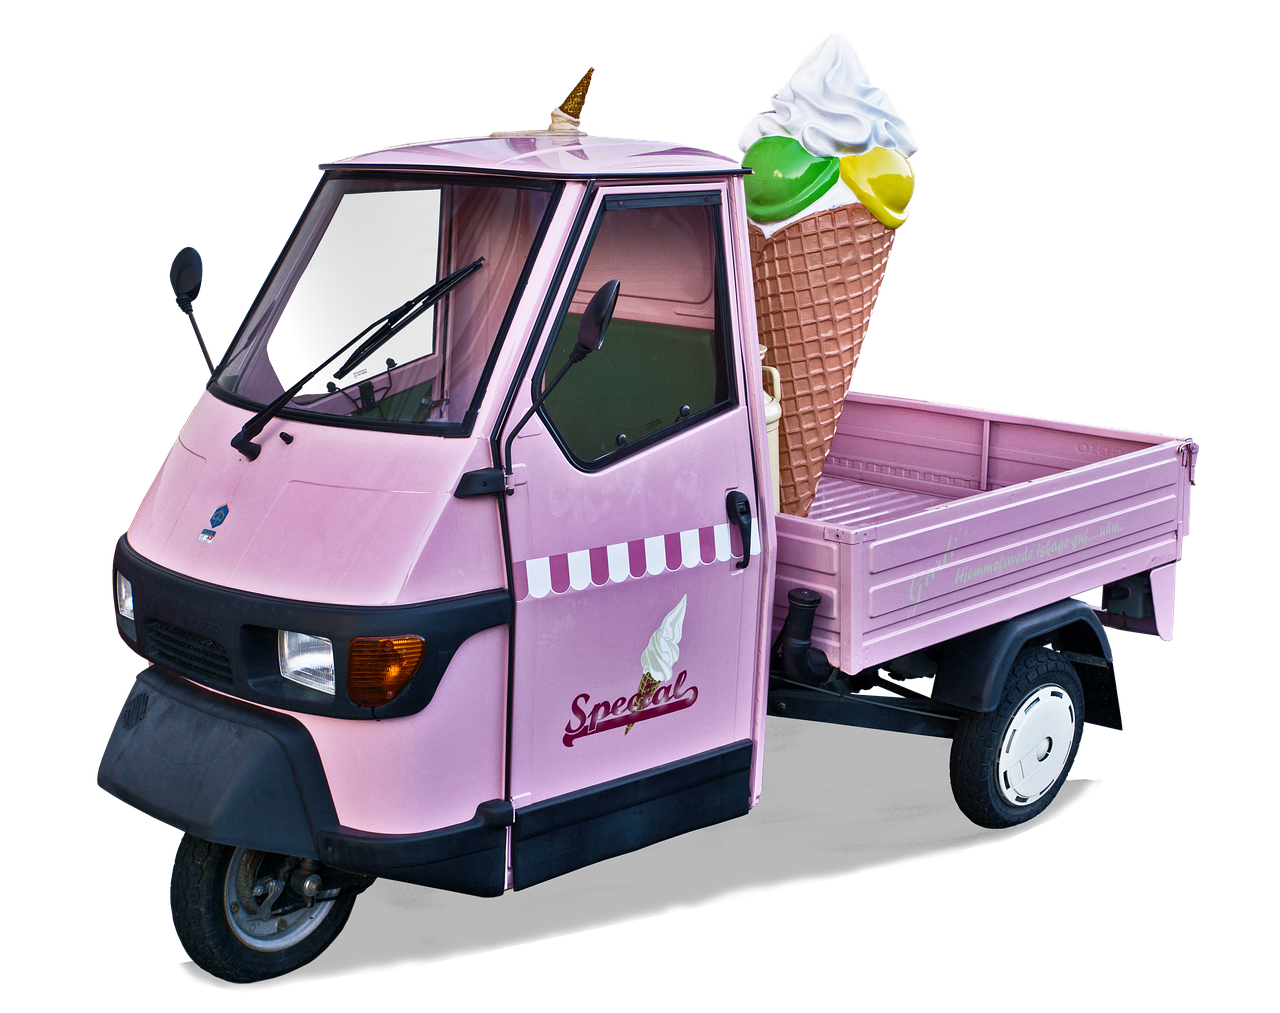 ice cream cone  ice cream van  advertising vehicle free photo